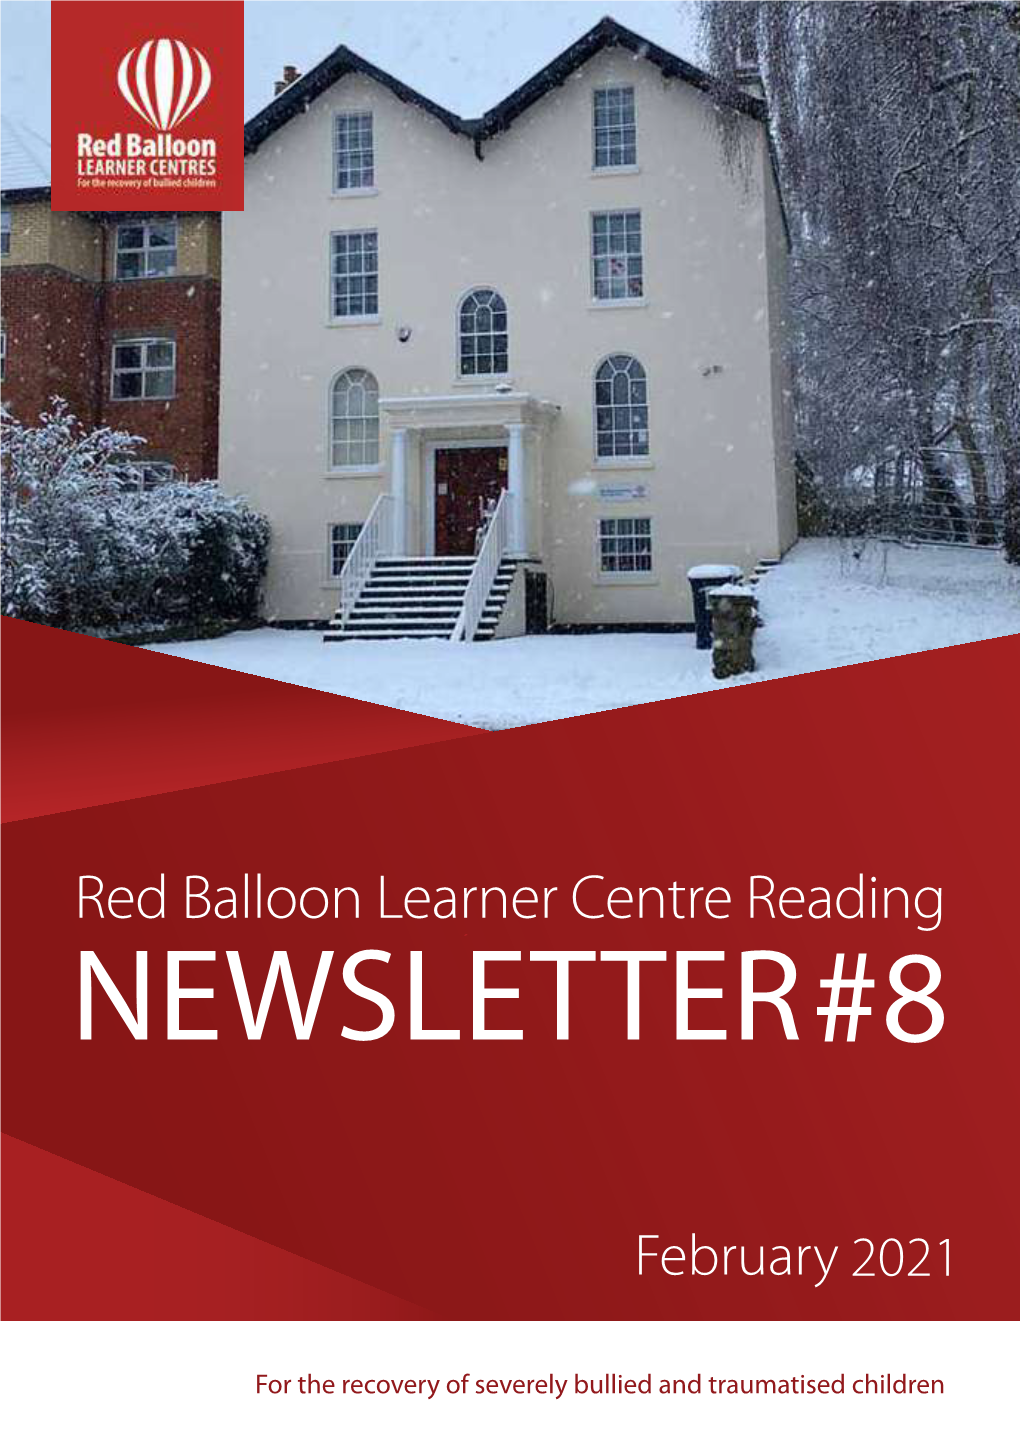 Red Balloon Reading's February Newsletter